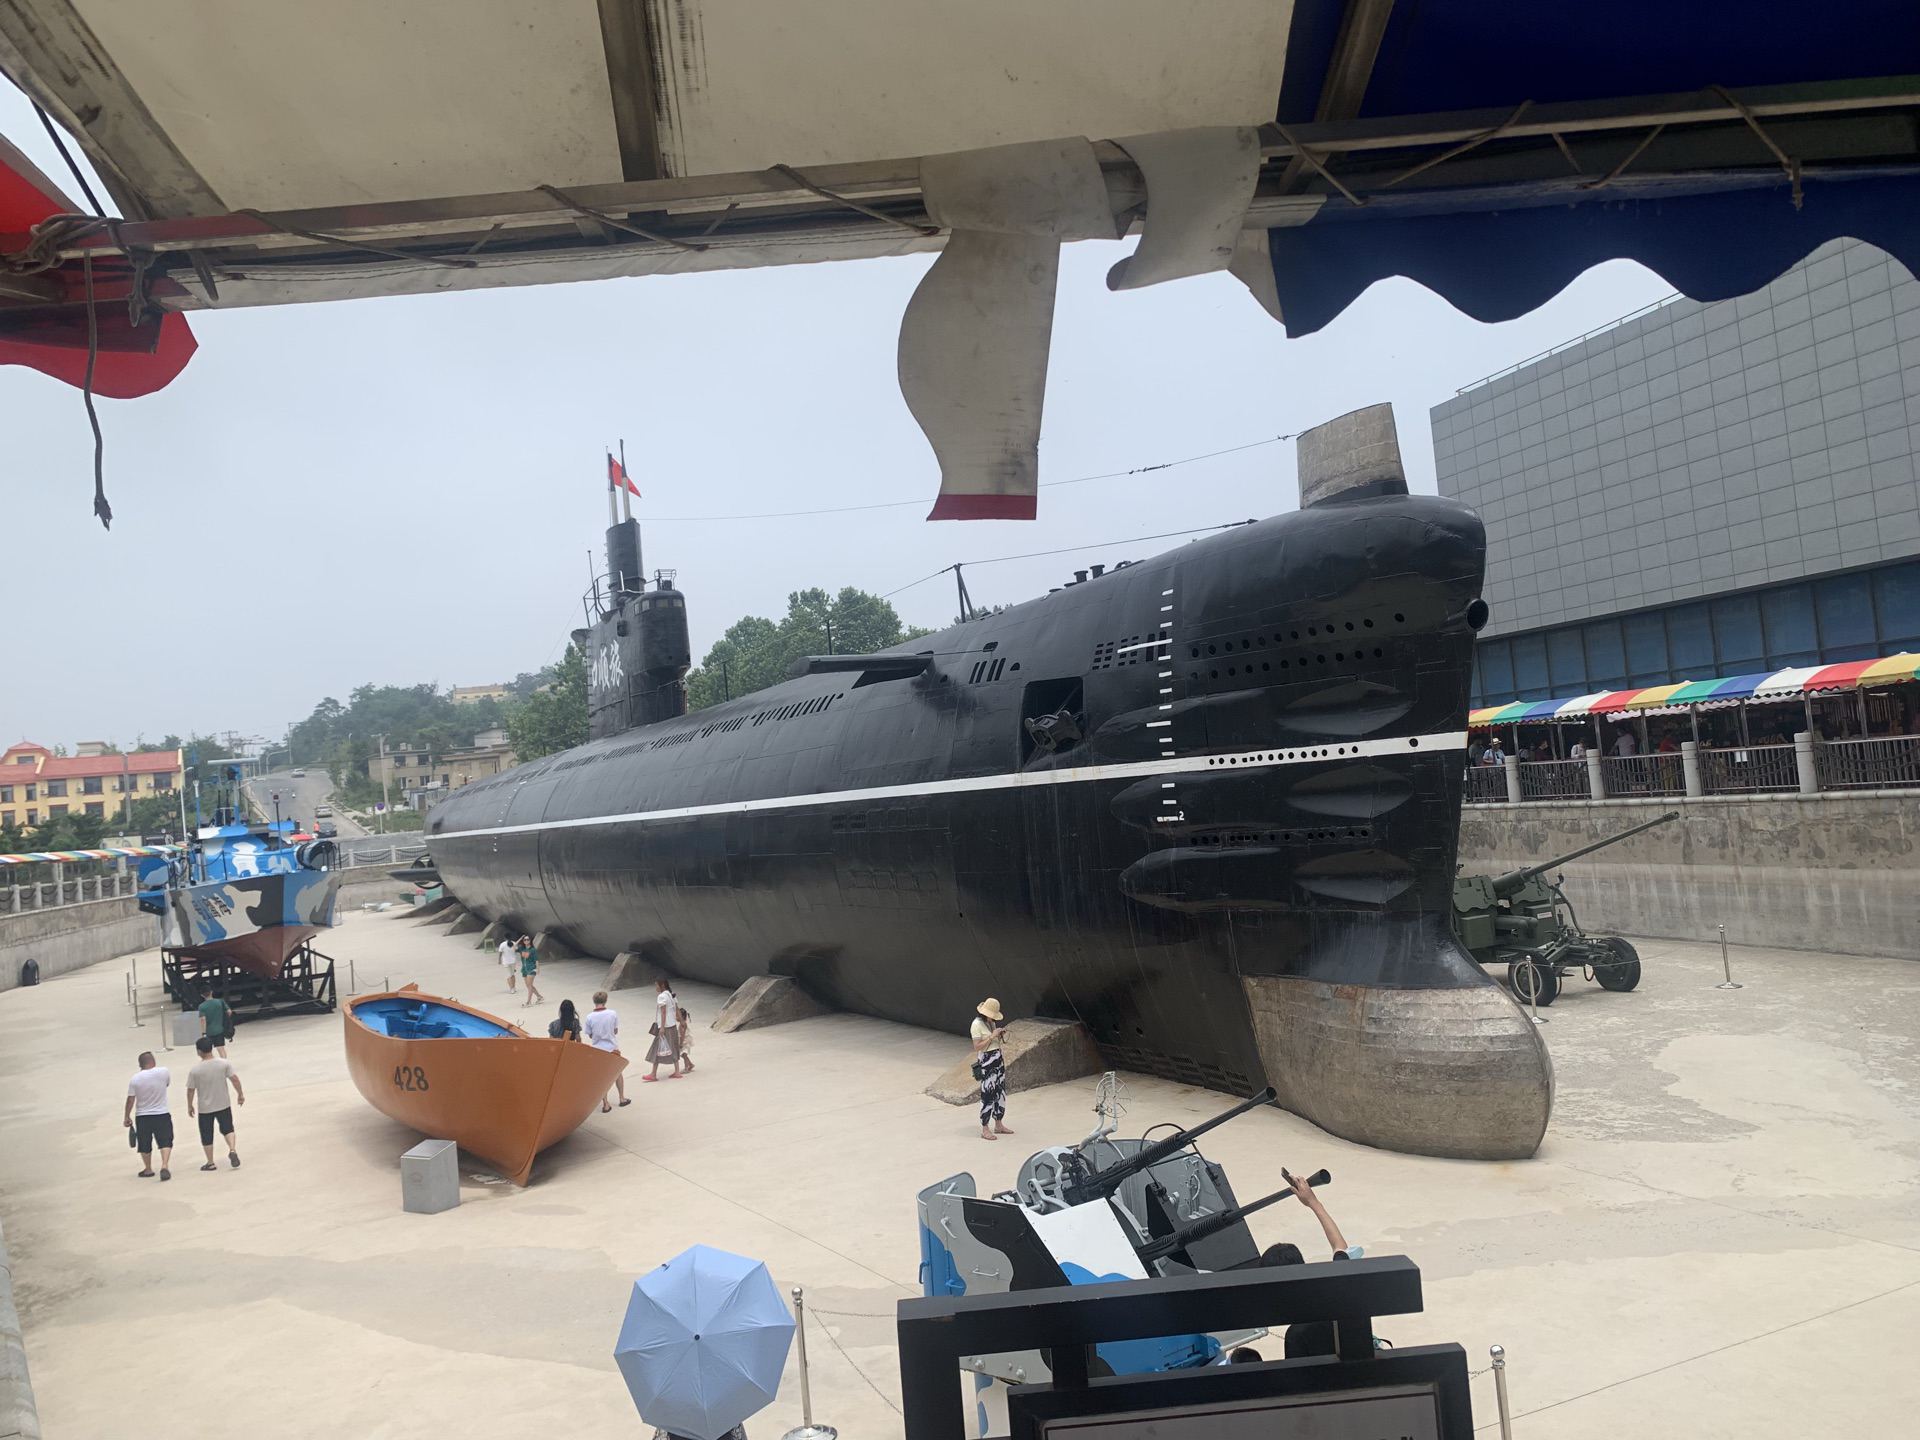 【携程攻略】大连旅顺潜艇博物馆适合朋友出游旅游吗,旅顺潜艇博物馆